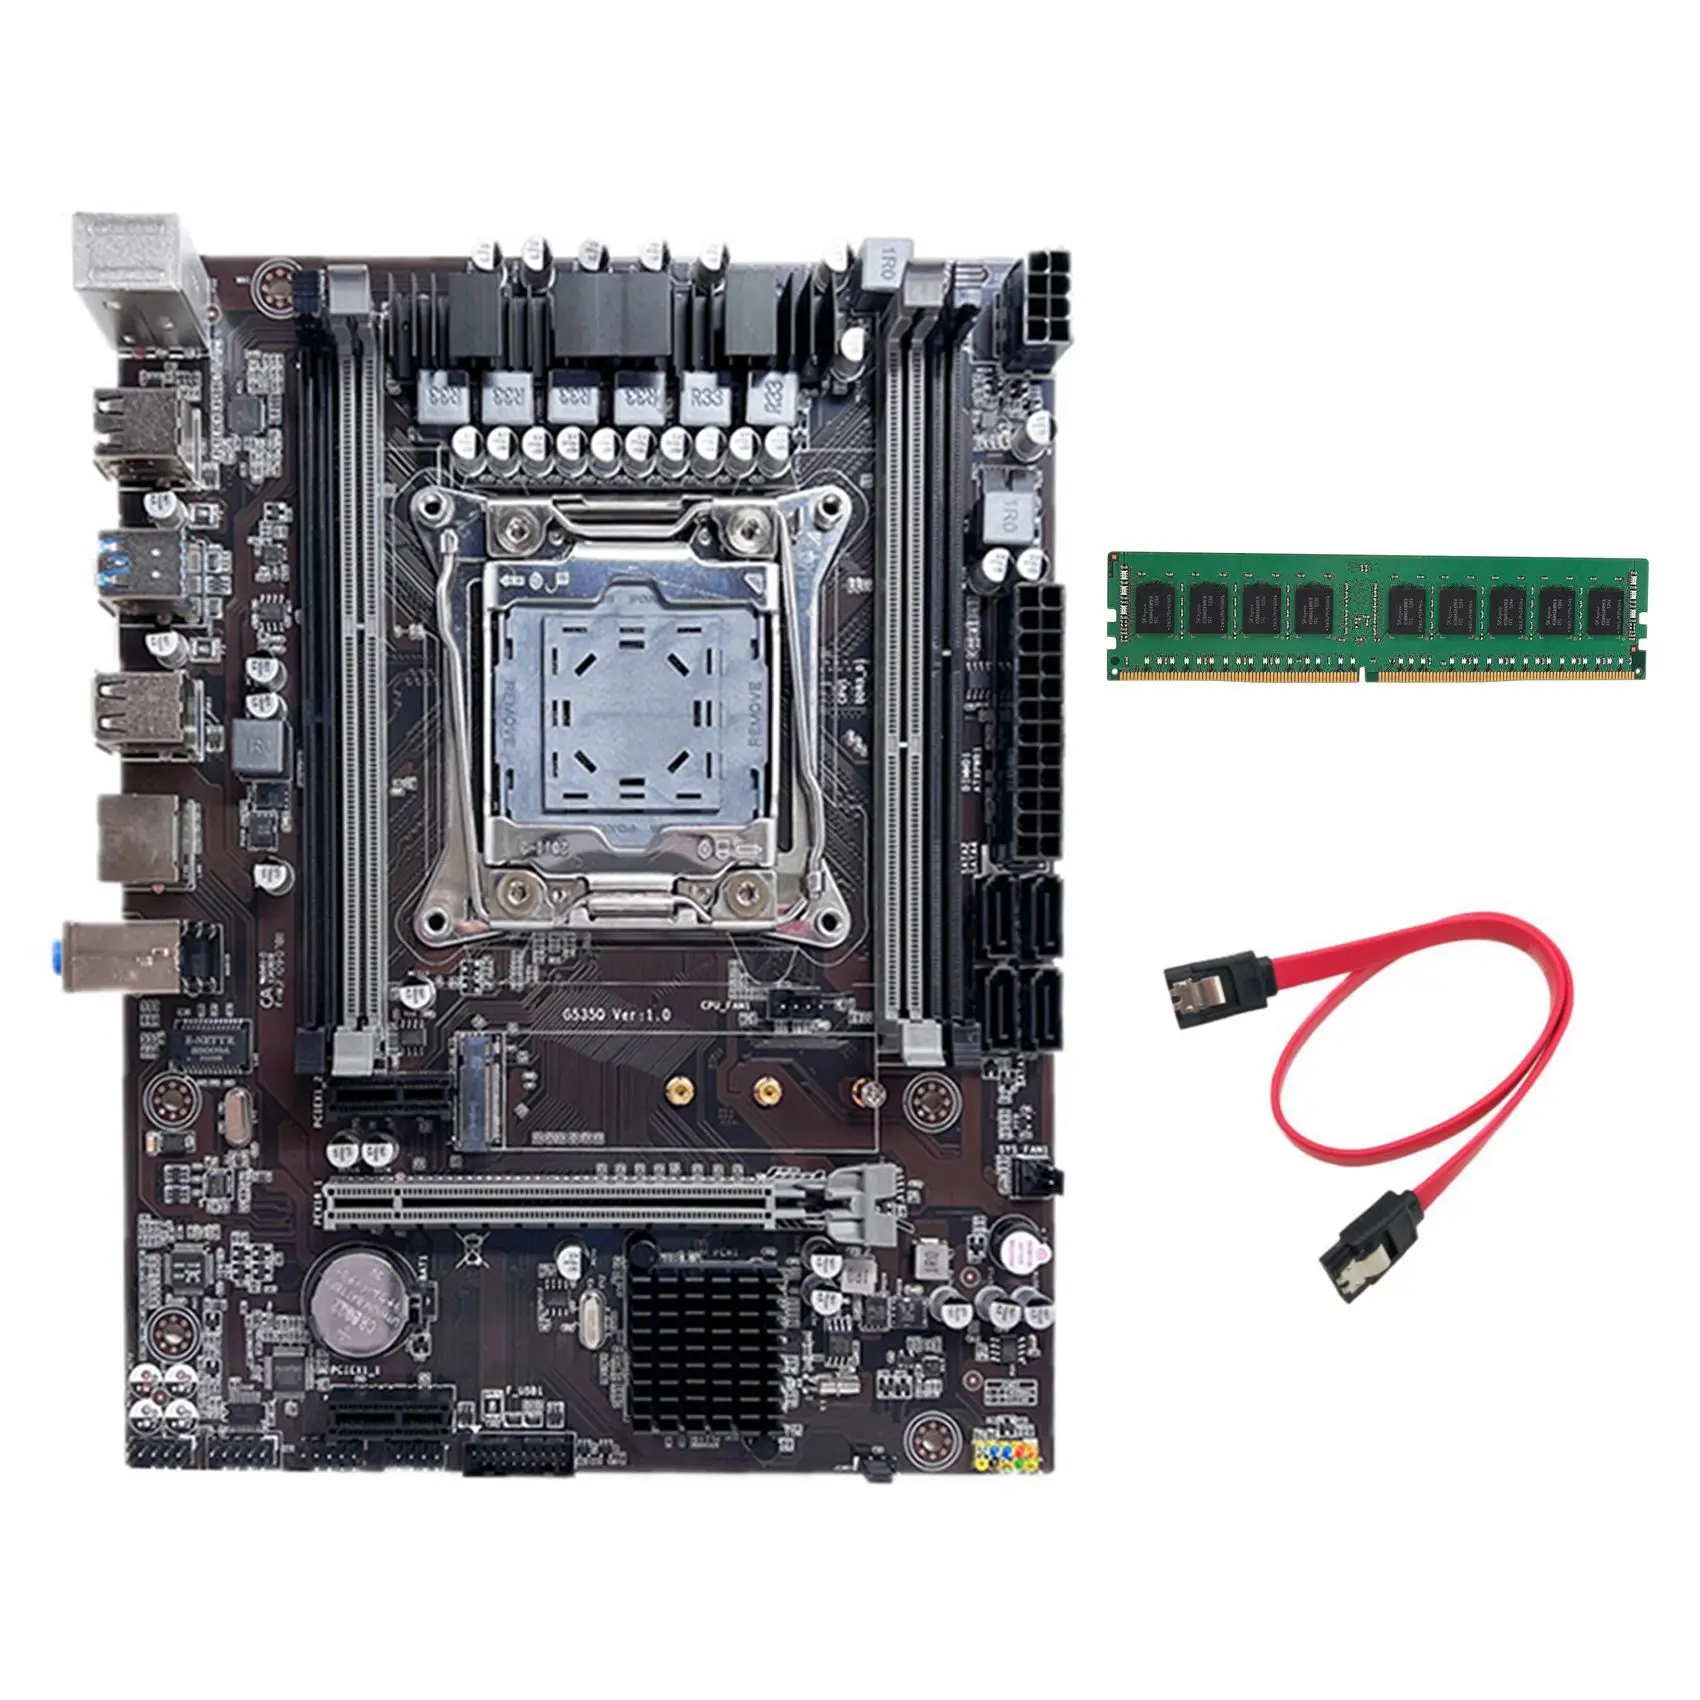 

Материнская плата X99, материнская плата для компьютера, поддержка процессора Xeon E5 V3 V4 серии с DDR4 4G 2133 МГц ОЗУ + кабель SATA